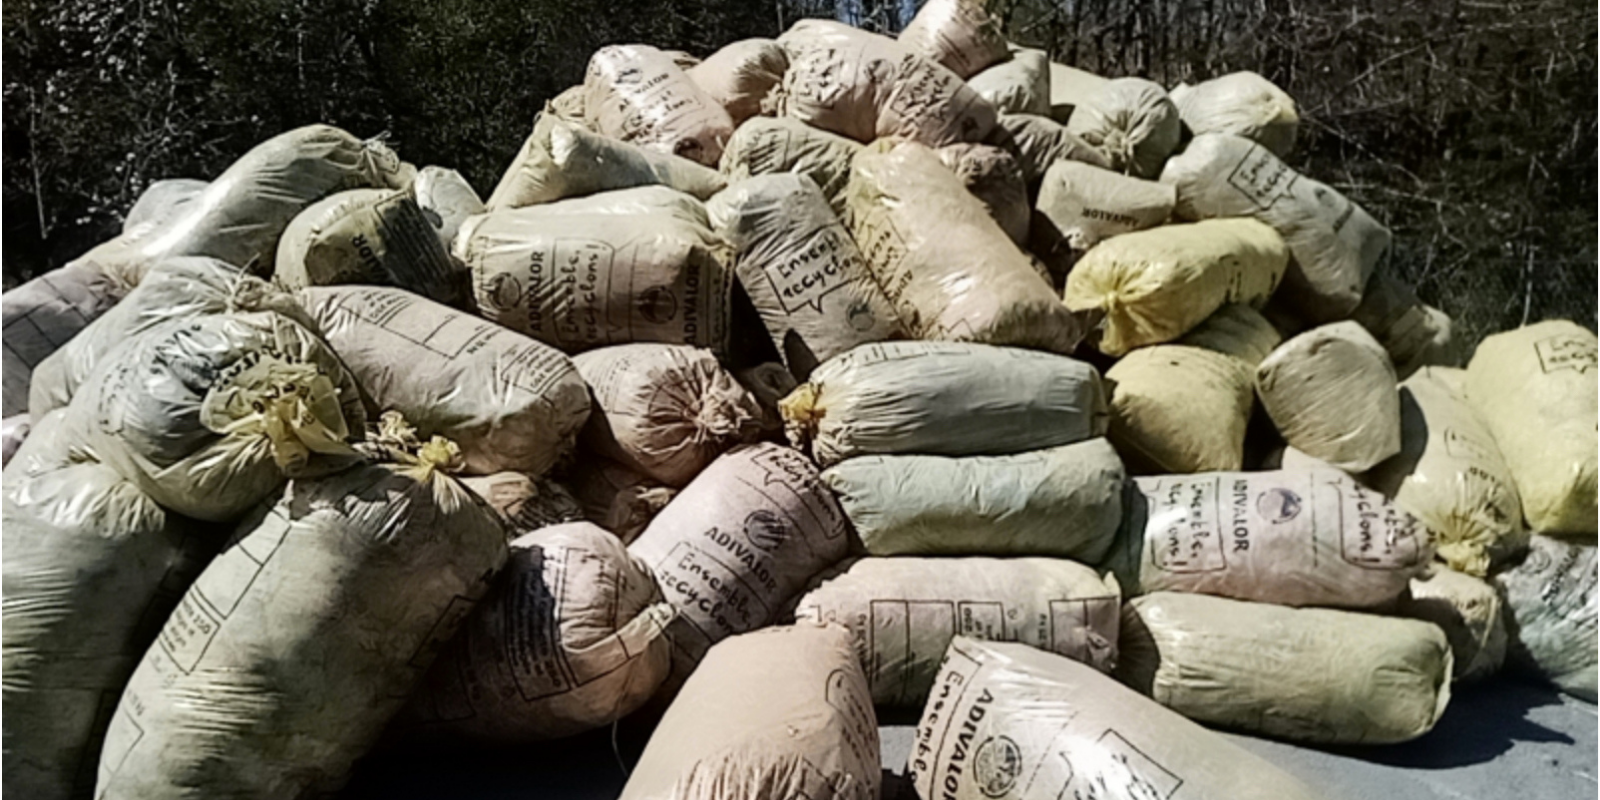 La FDCUMA du Tarn a collecté en une semaine 290 tonnes de déchets sur 20 points de collecte ! 